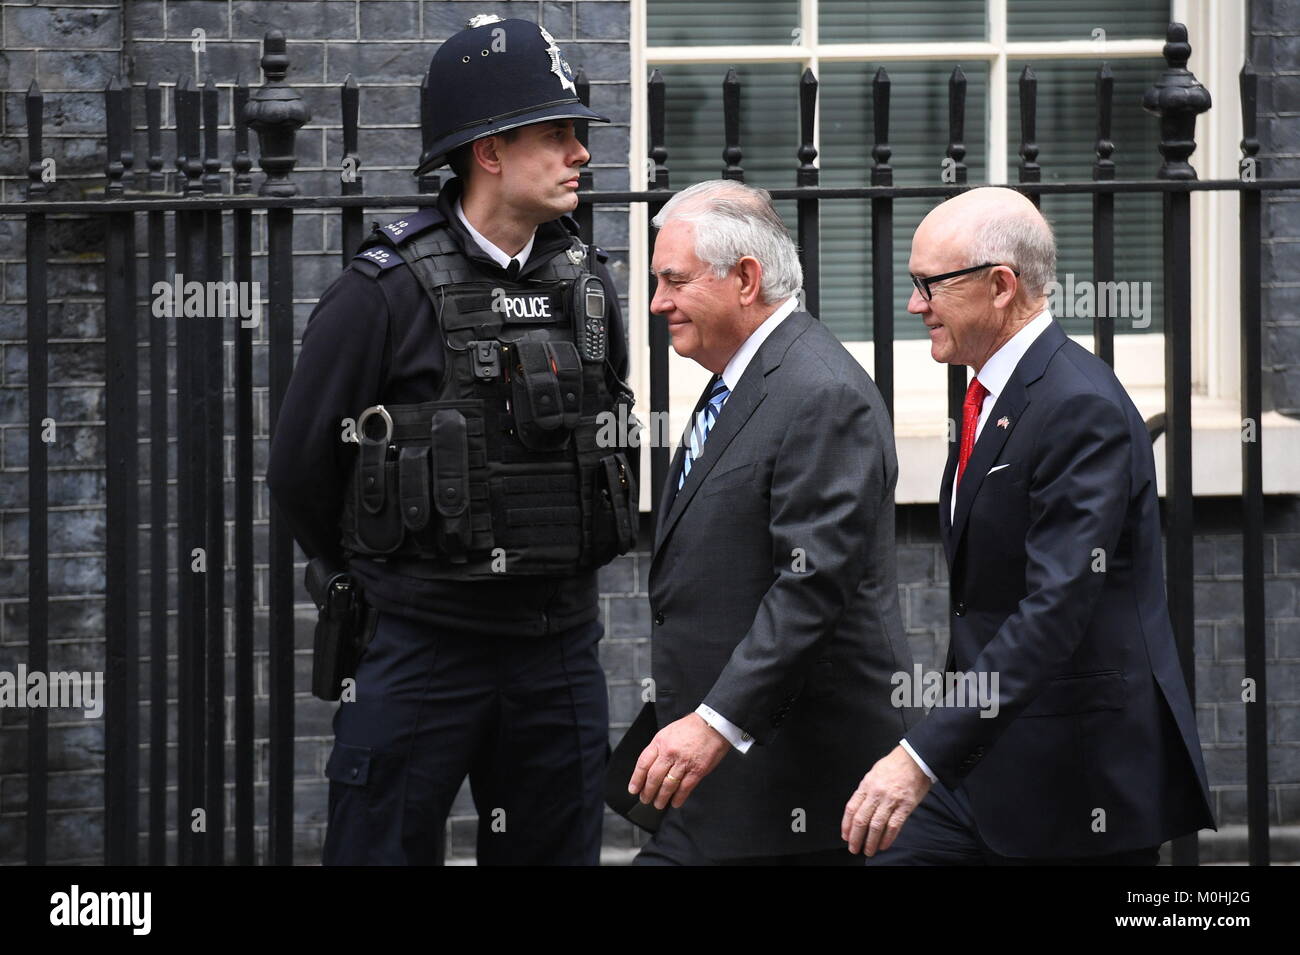 Le secrétaire d'Etat américain Rex Tillerson (à gauche) et l'ambassadeur des Etats-Unis Woody Johnson arrivent au 10 Downing Street, Londres, pour des entretiens avec le premier ministre Theresa May. Banque D'Images